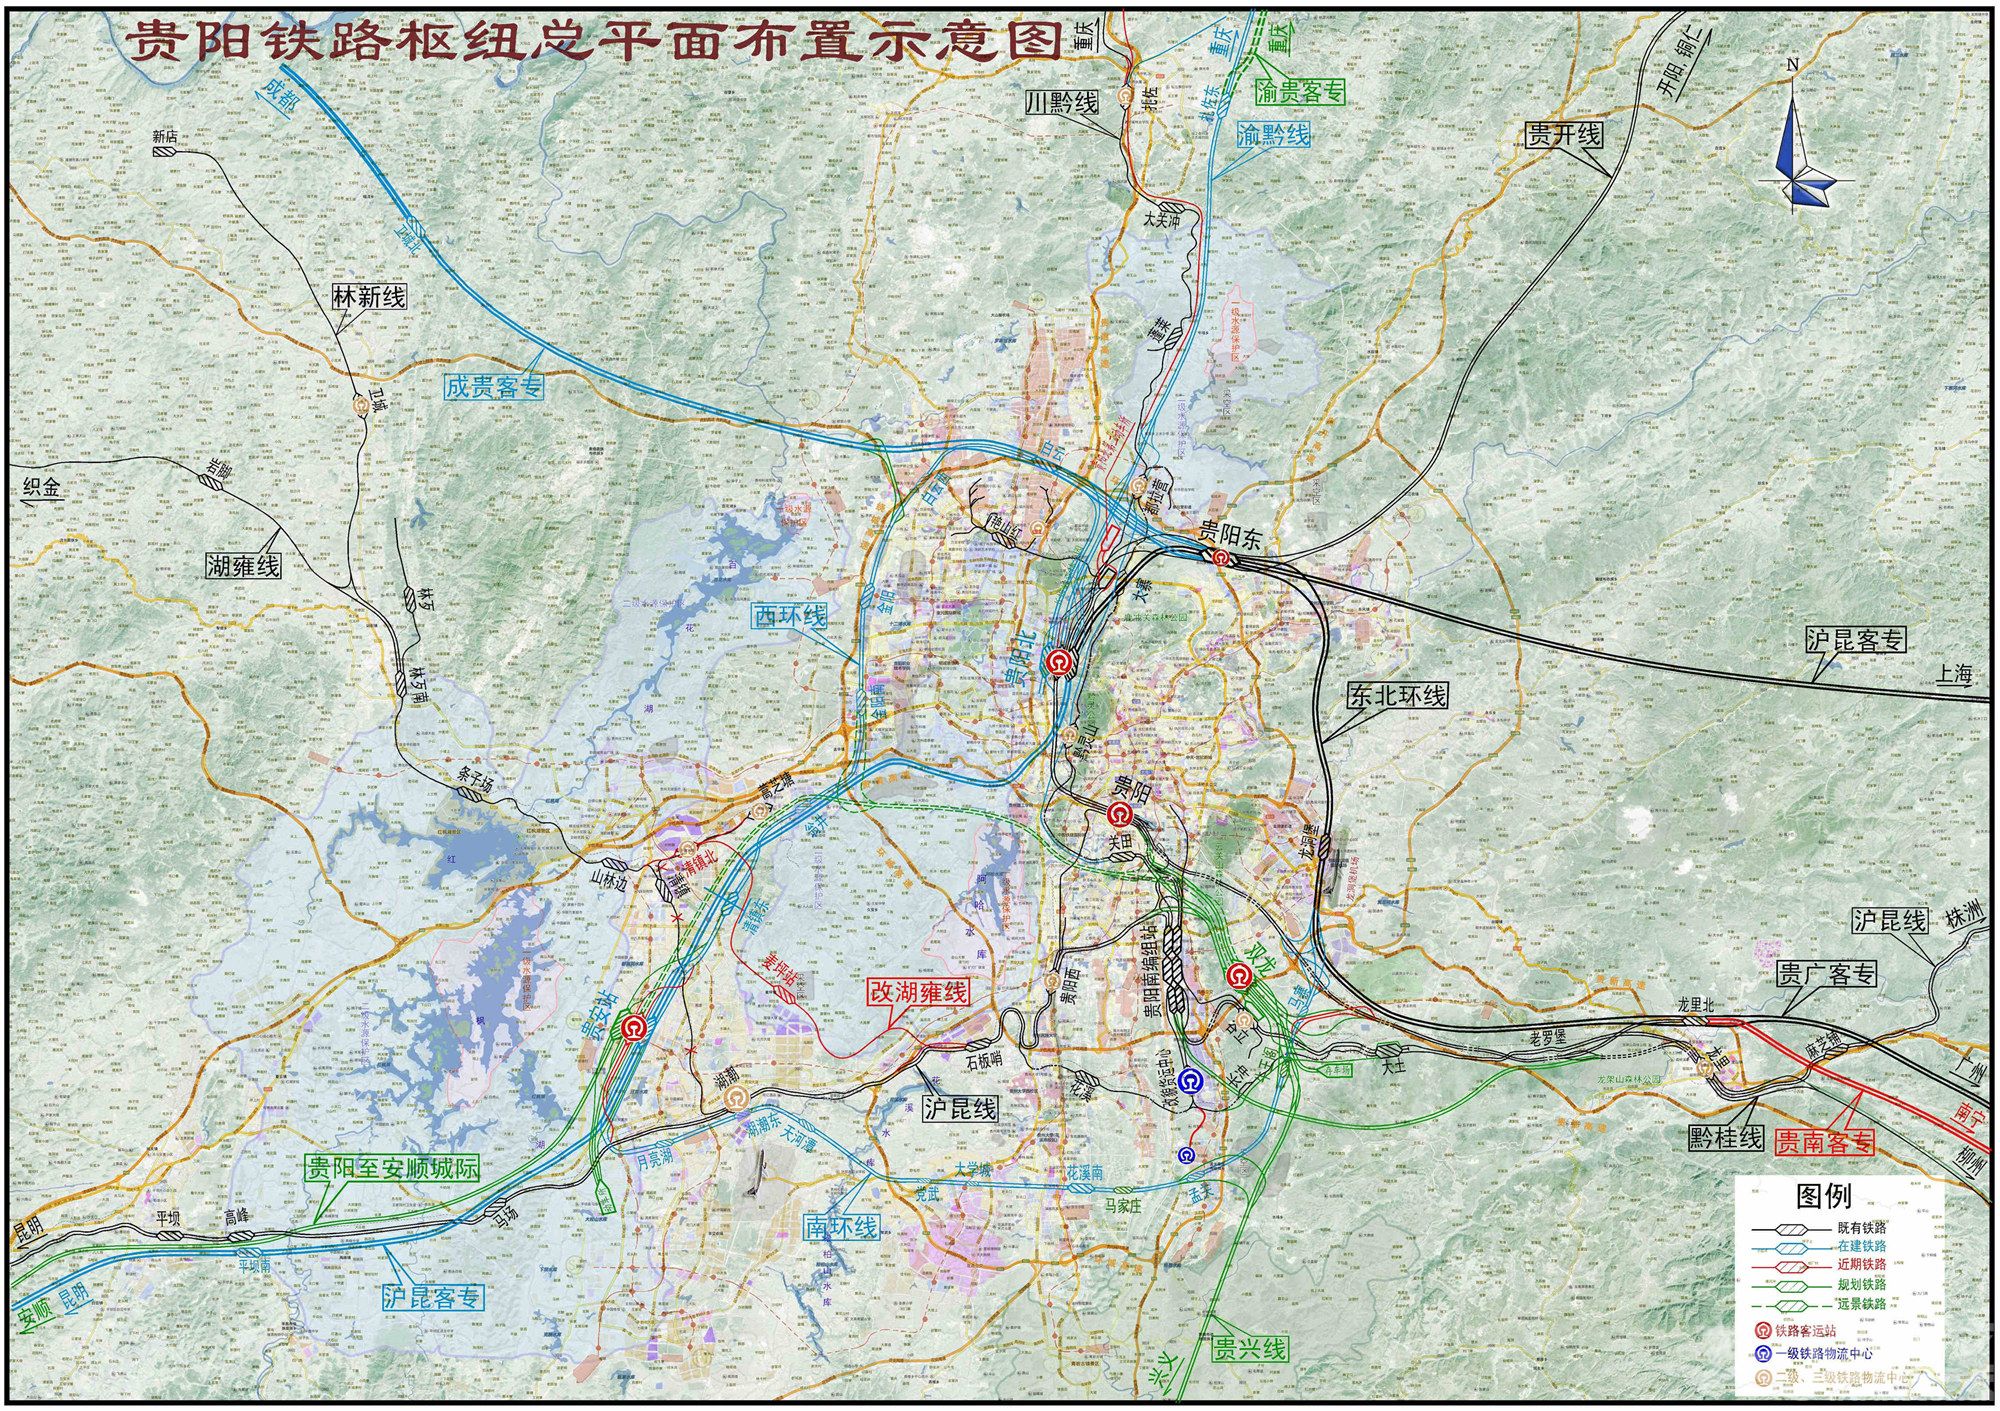 69 精彩四川 69 城市论坛 69 网传重庆铁路枢纽最新规划,是不是